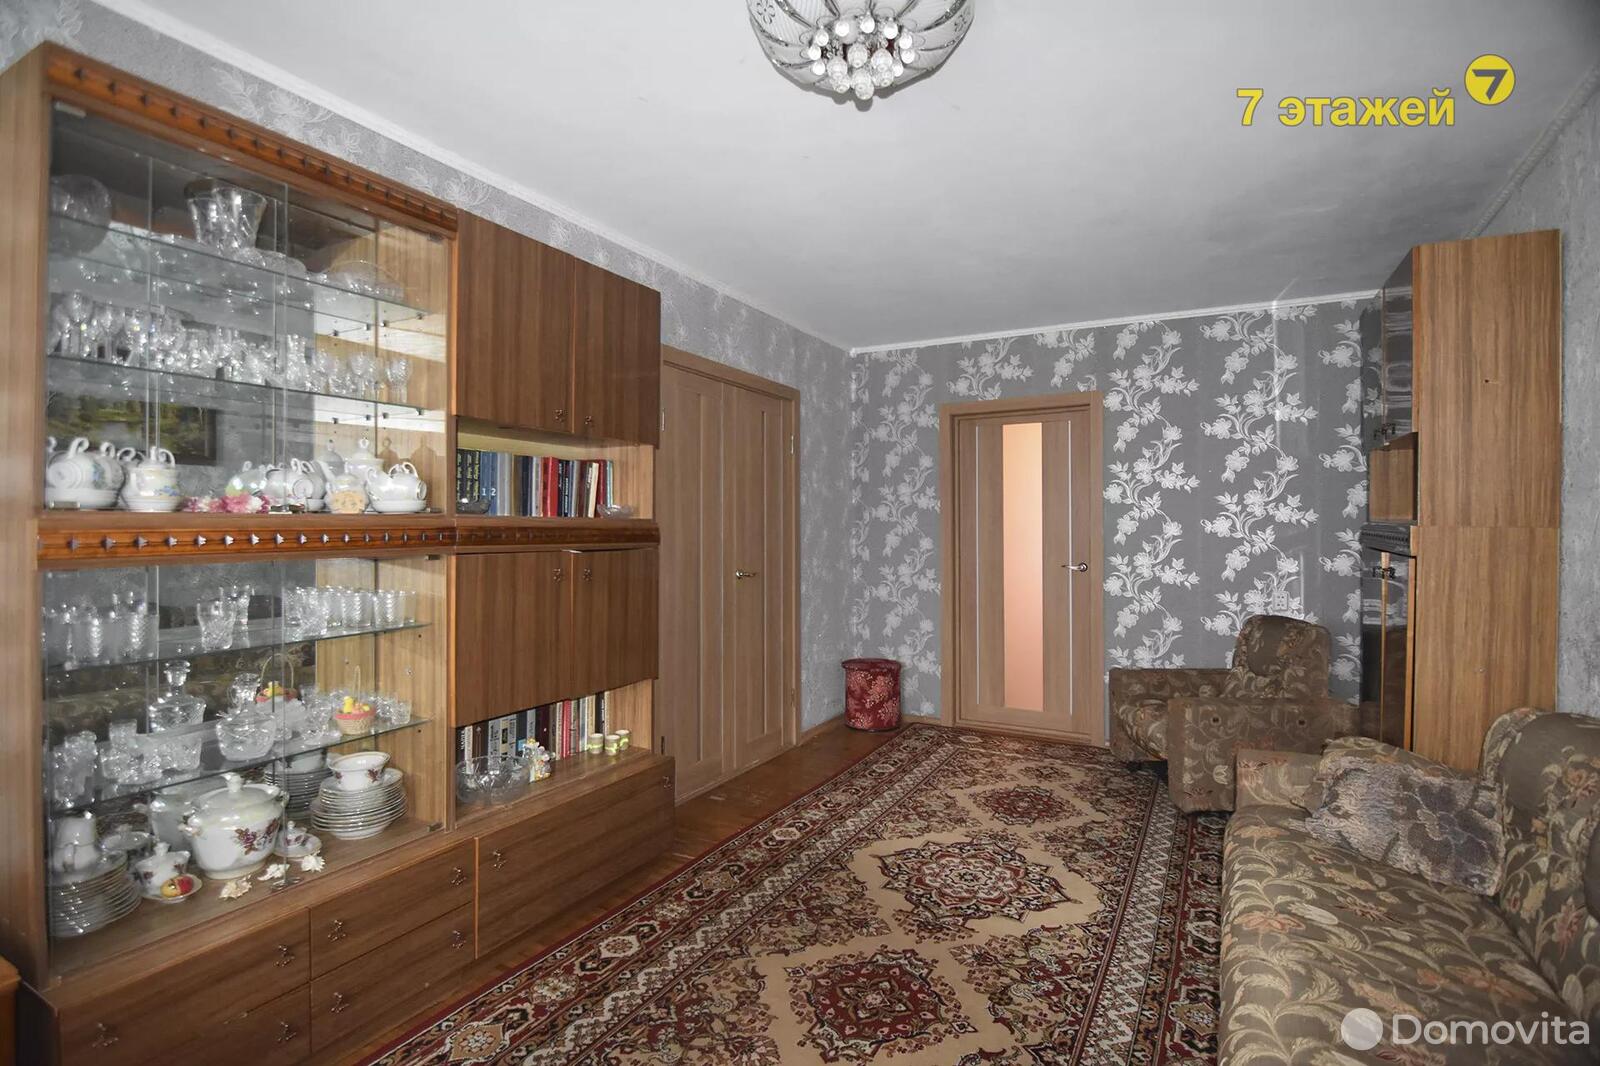 Цена продажи квартиры, Борисов, ул. Чаловской, д. 35